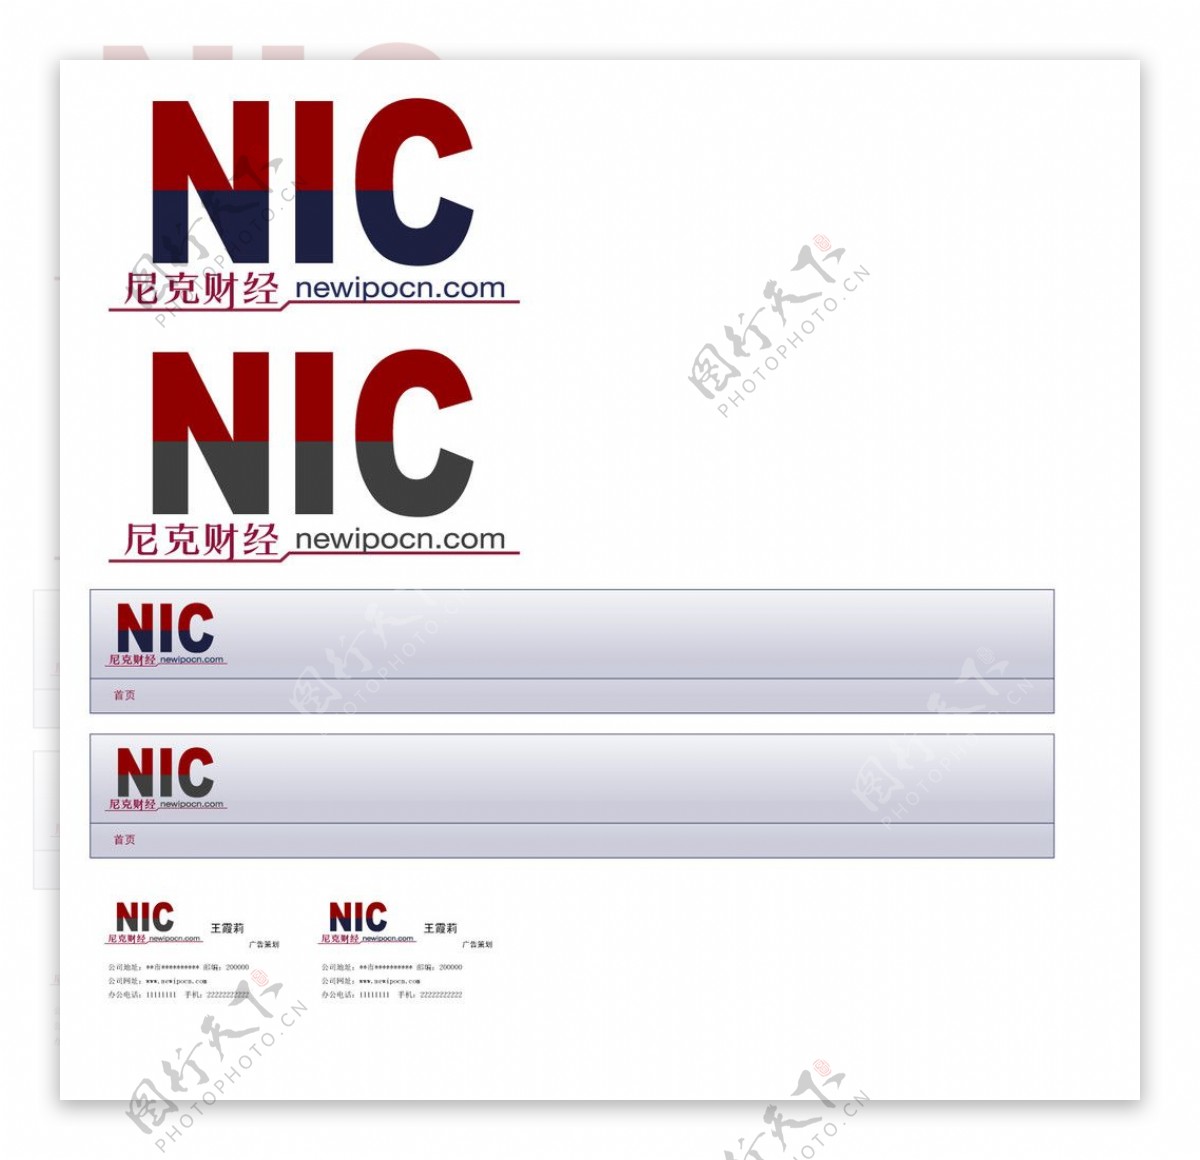 尼克财经网站logo设计图片